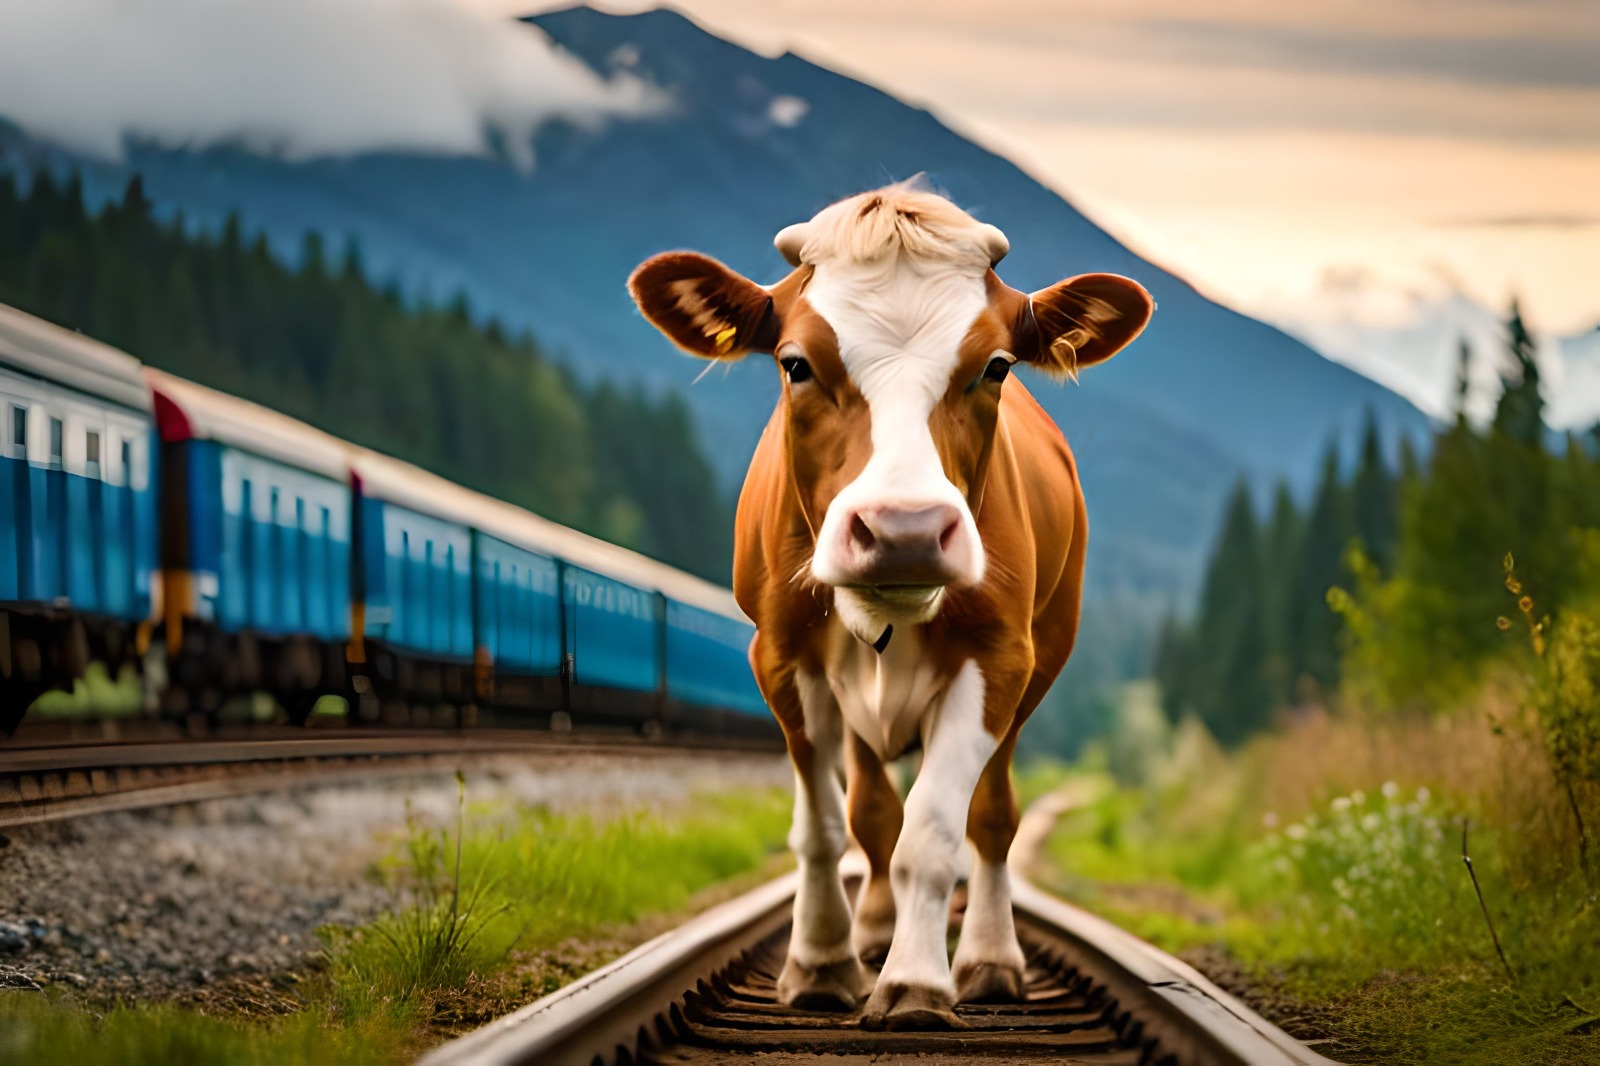 Una vaca, en las vías del tren. Fotografía creada con inteligencia artificial